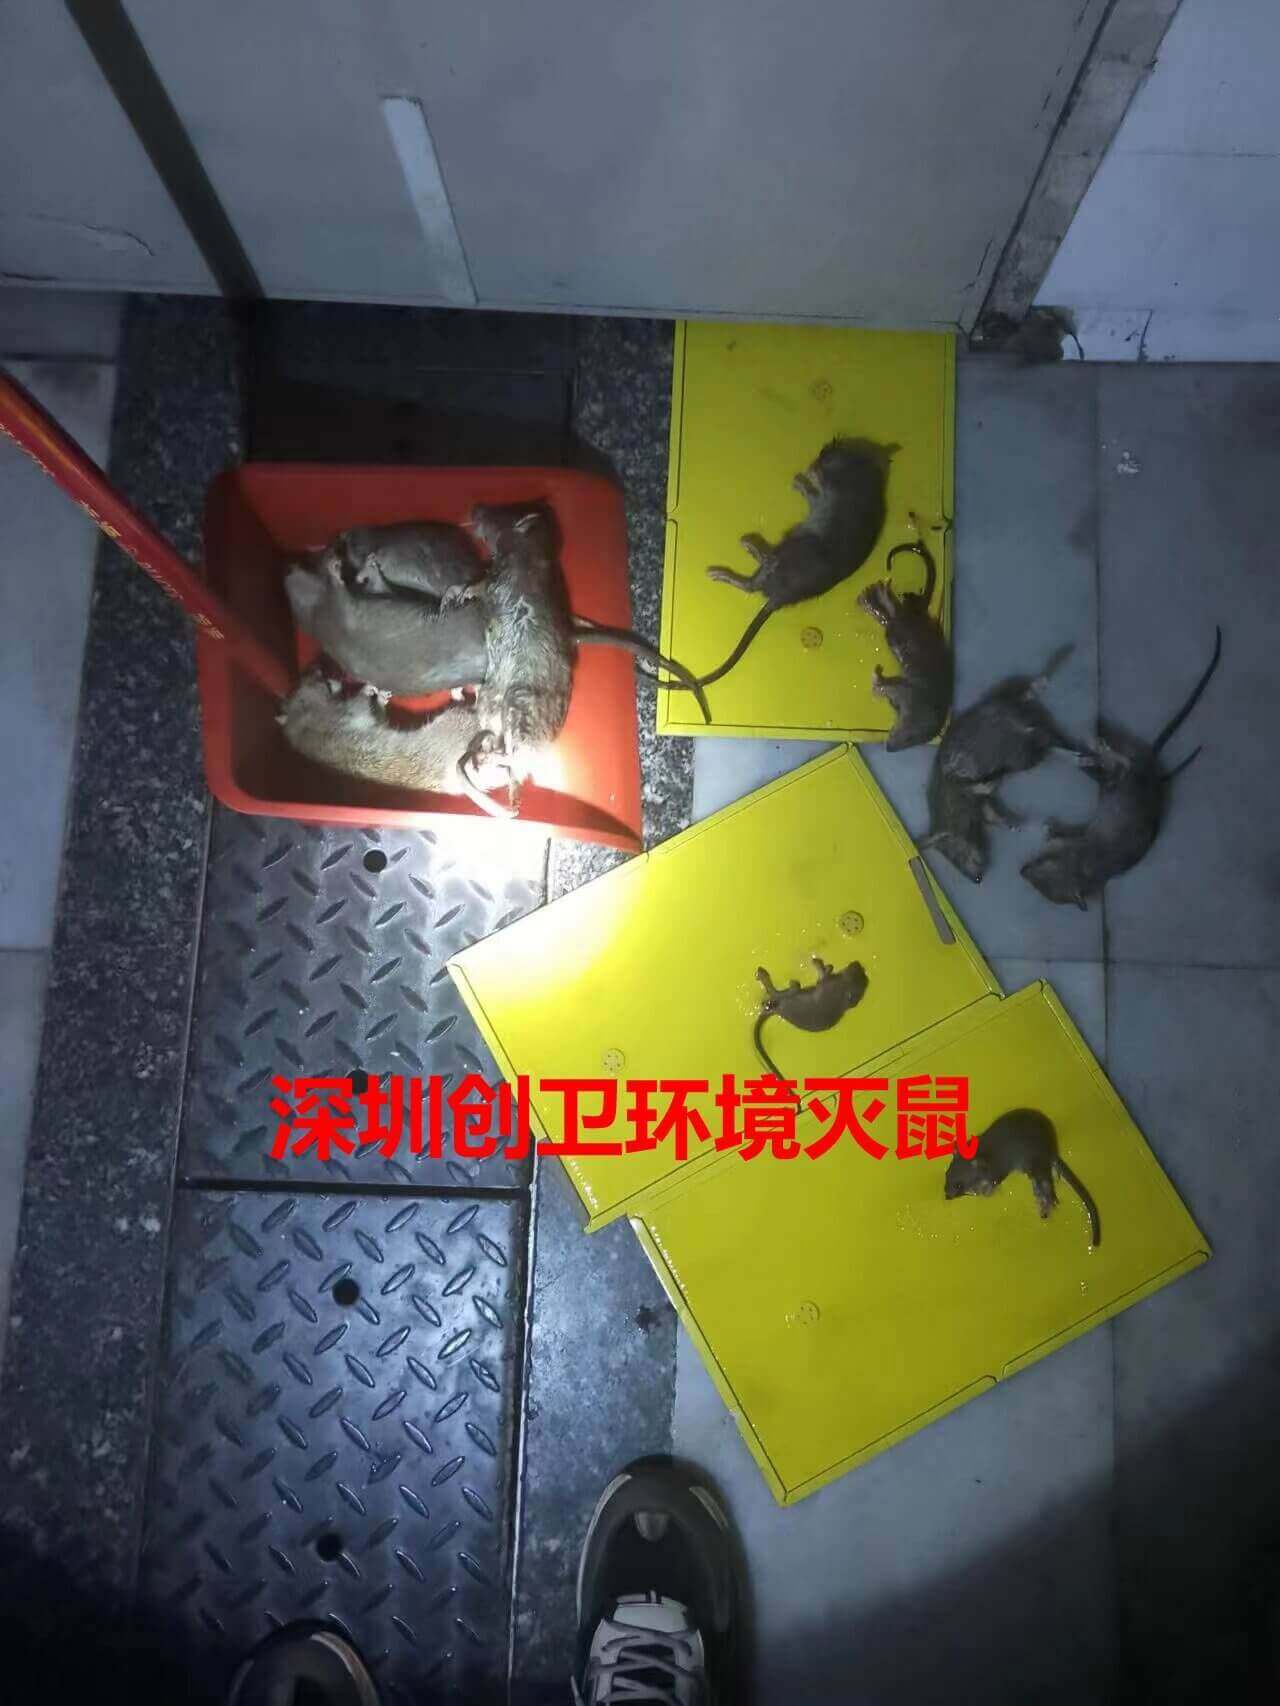 深圳灭鼠专家告诉你炎炎夏日如何做好老鼠防范 公司动态